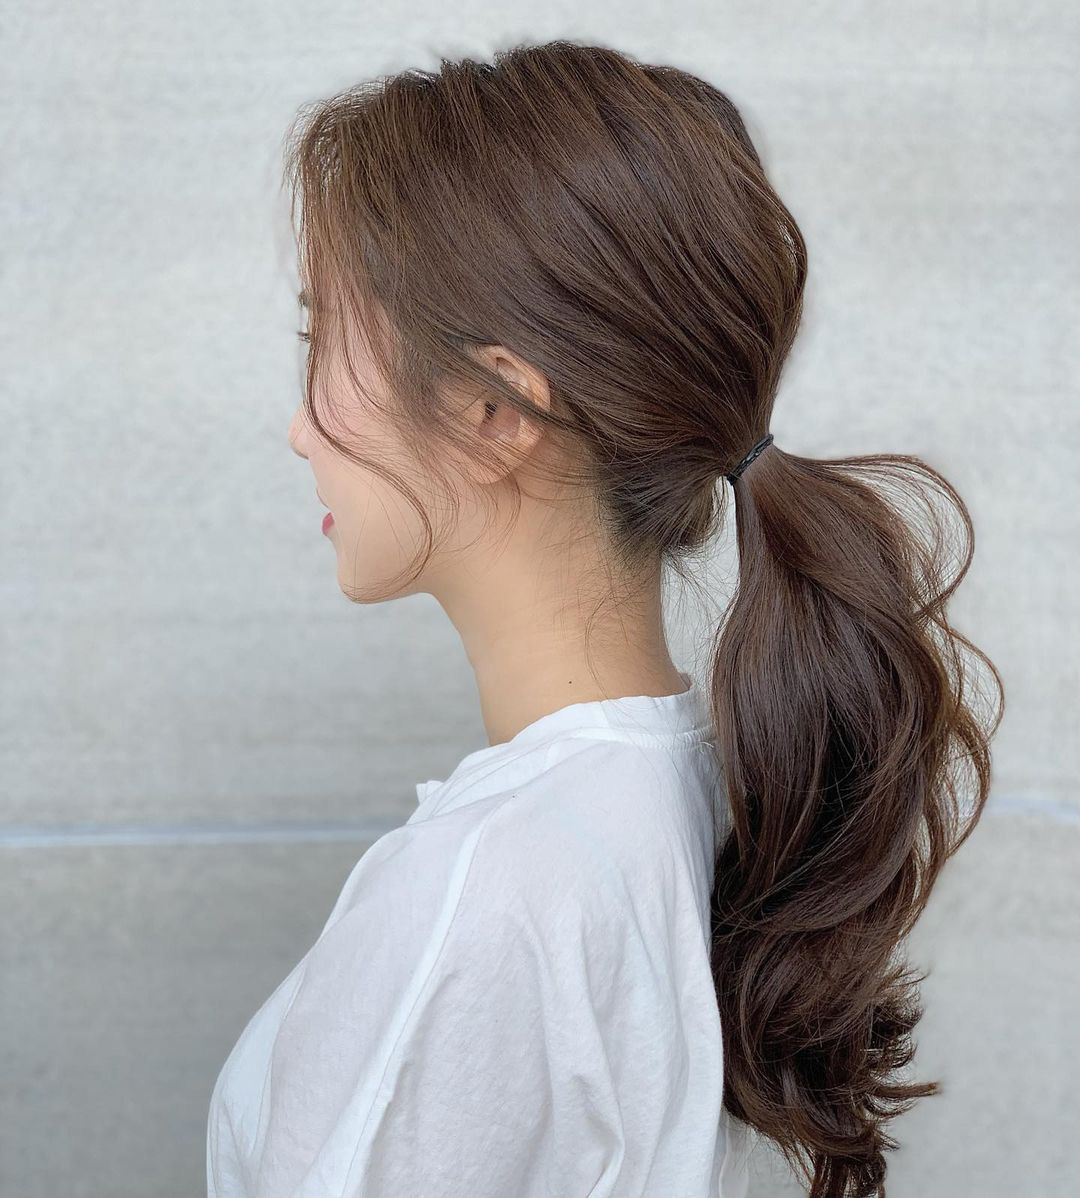 Chia sẻ nhiều hơn 29 cách làm điệu với tóc dài mới nhất  thdonghoadian